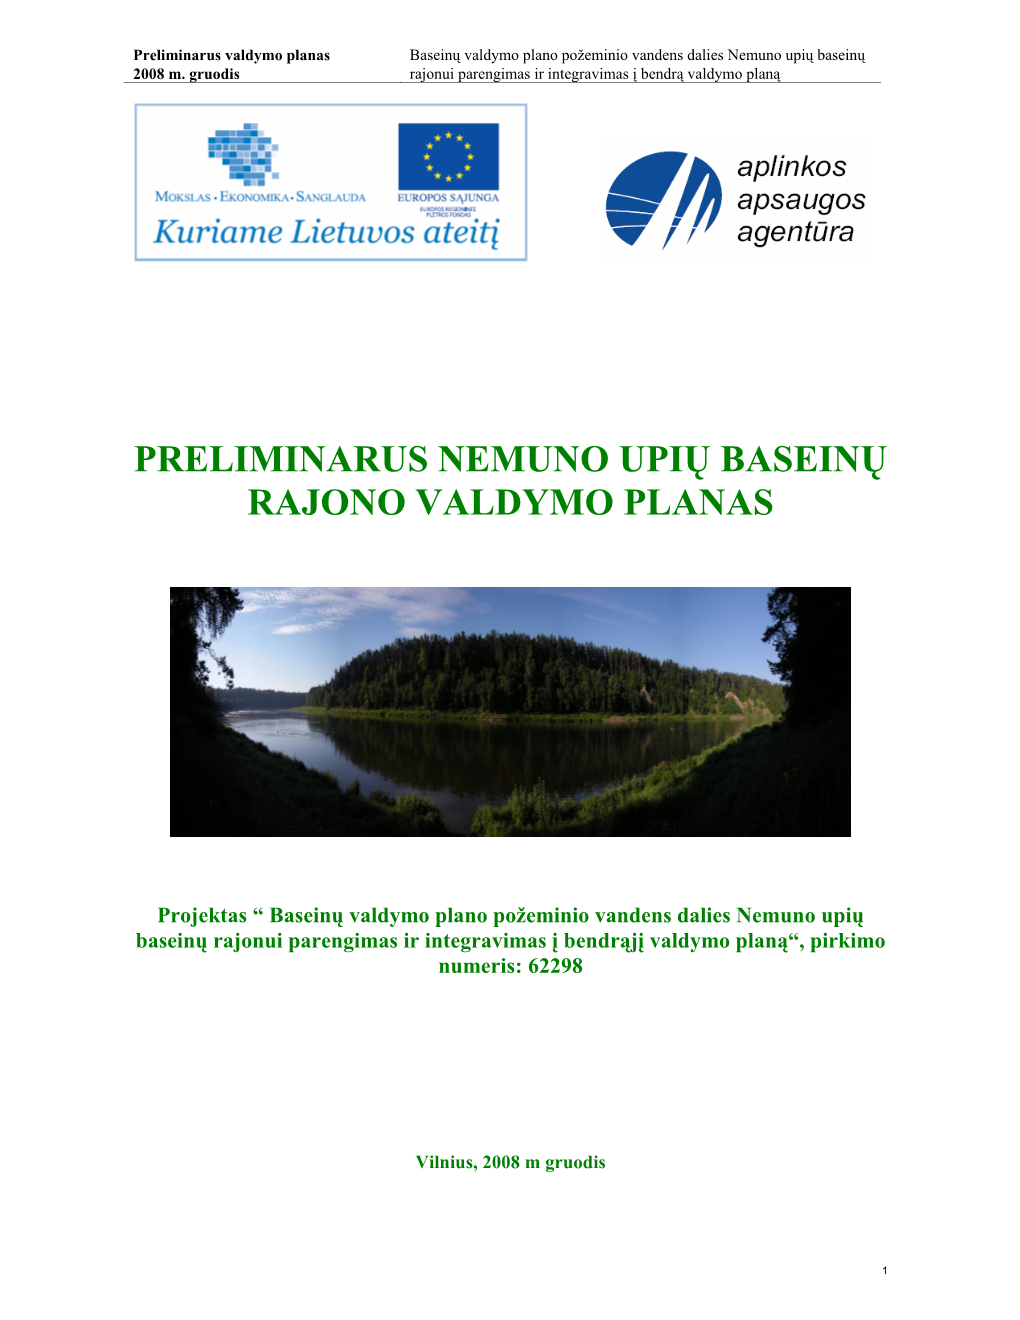 Preliminarus Nemuno Upių Baseinų Rajono Valdymo Planas